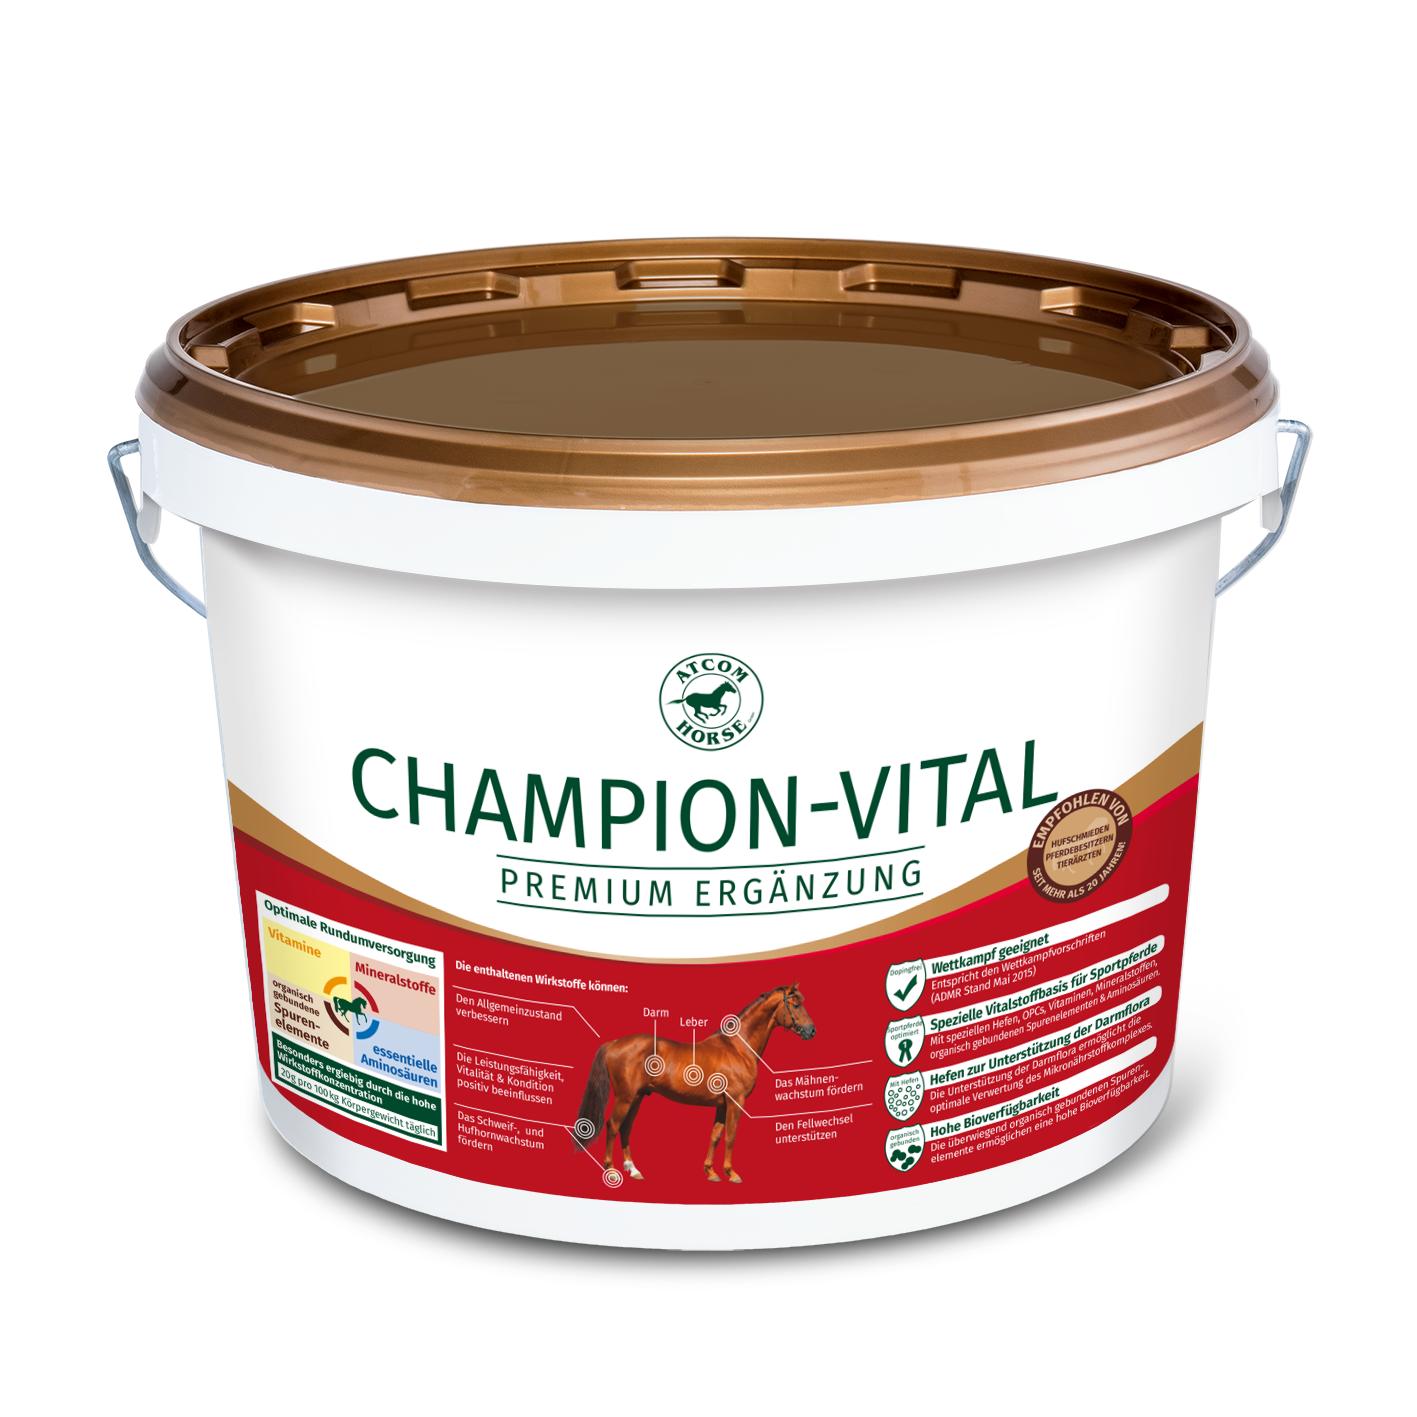 Atcom CHAMPION-VITAL - 5 Kilogramm